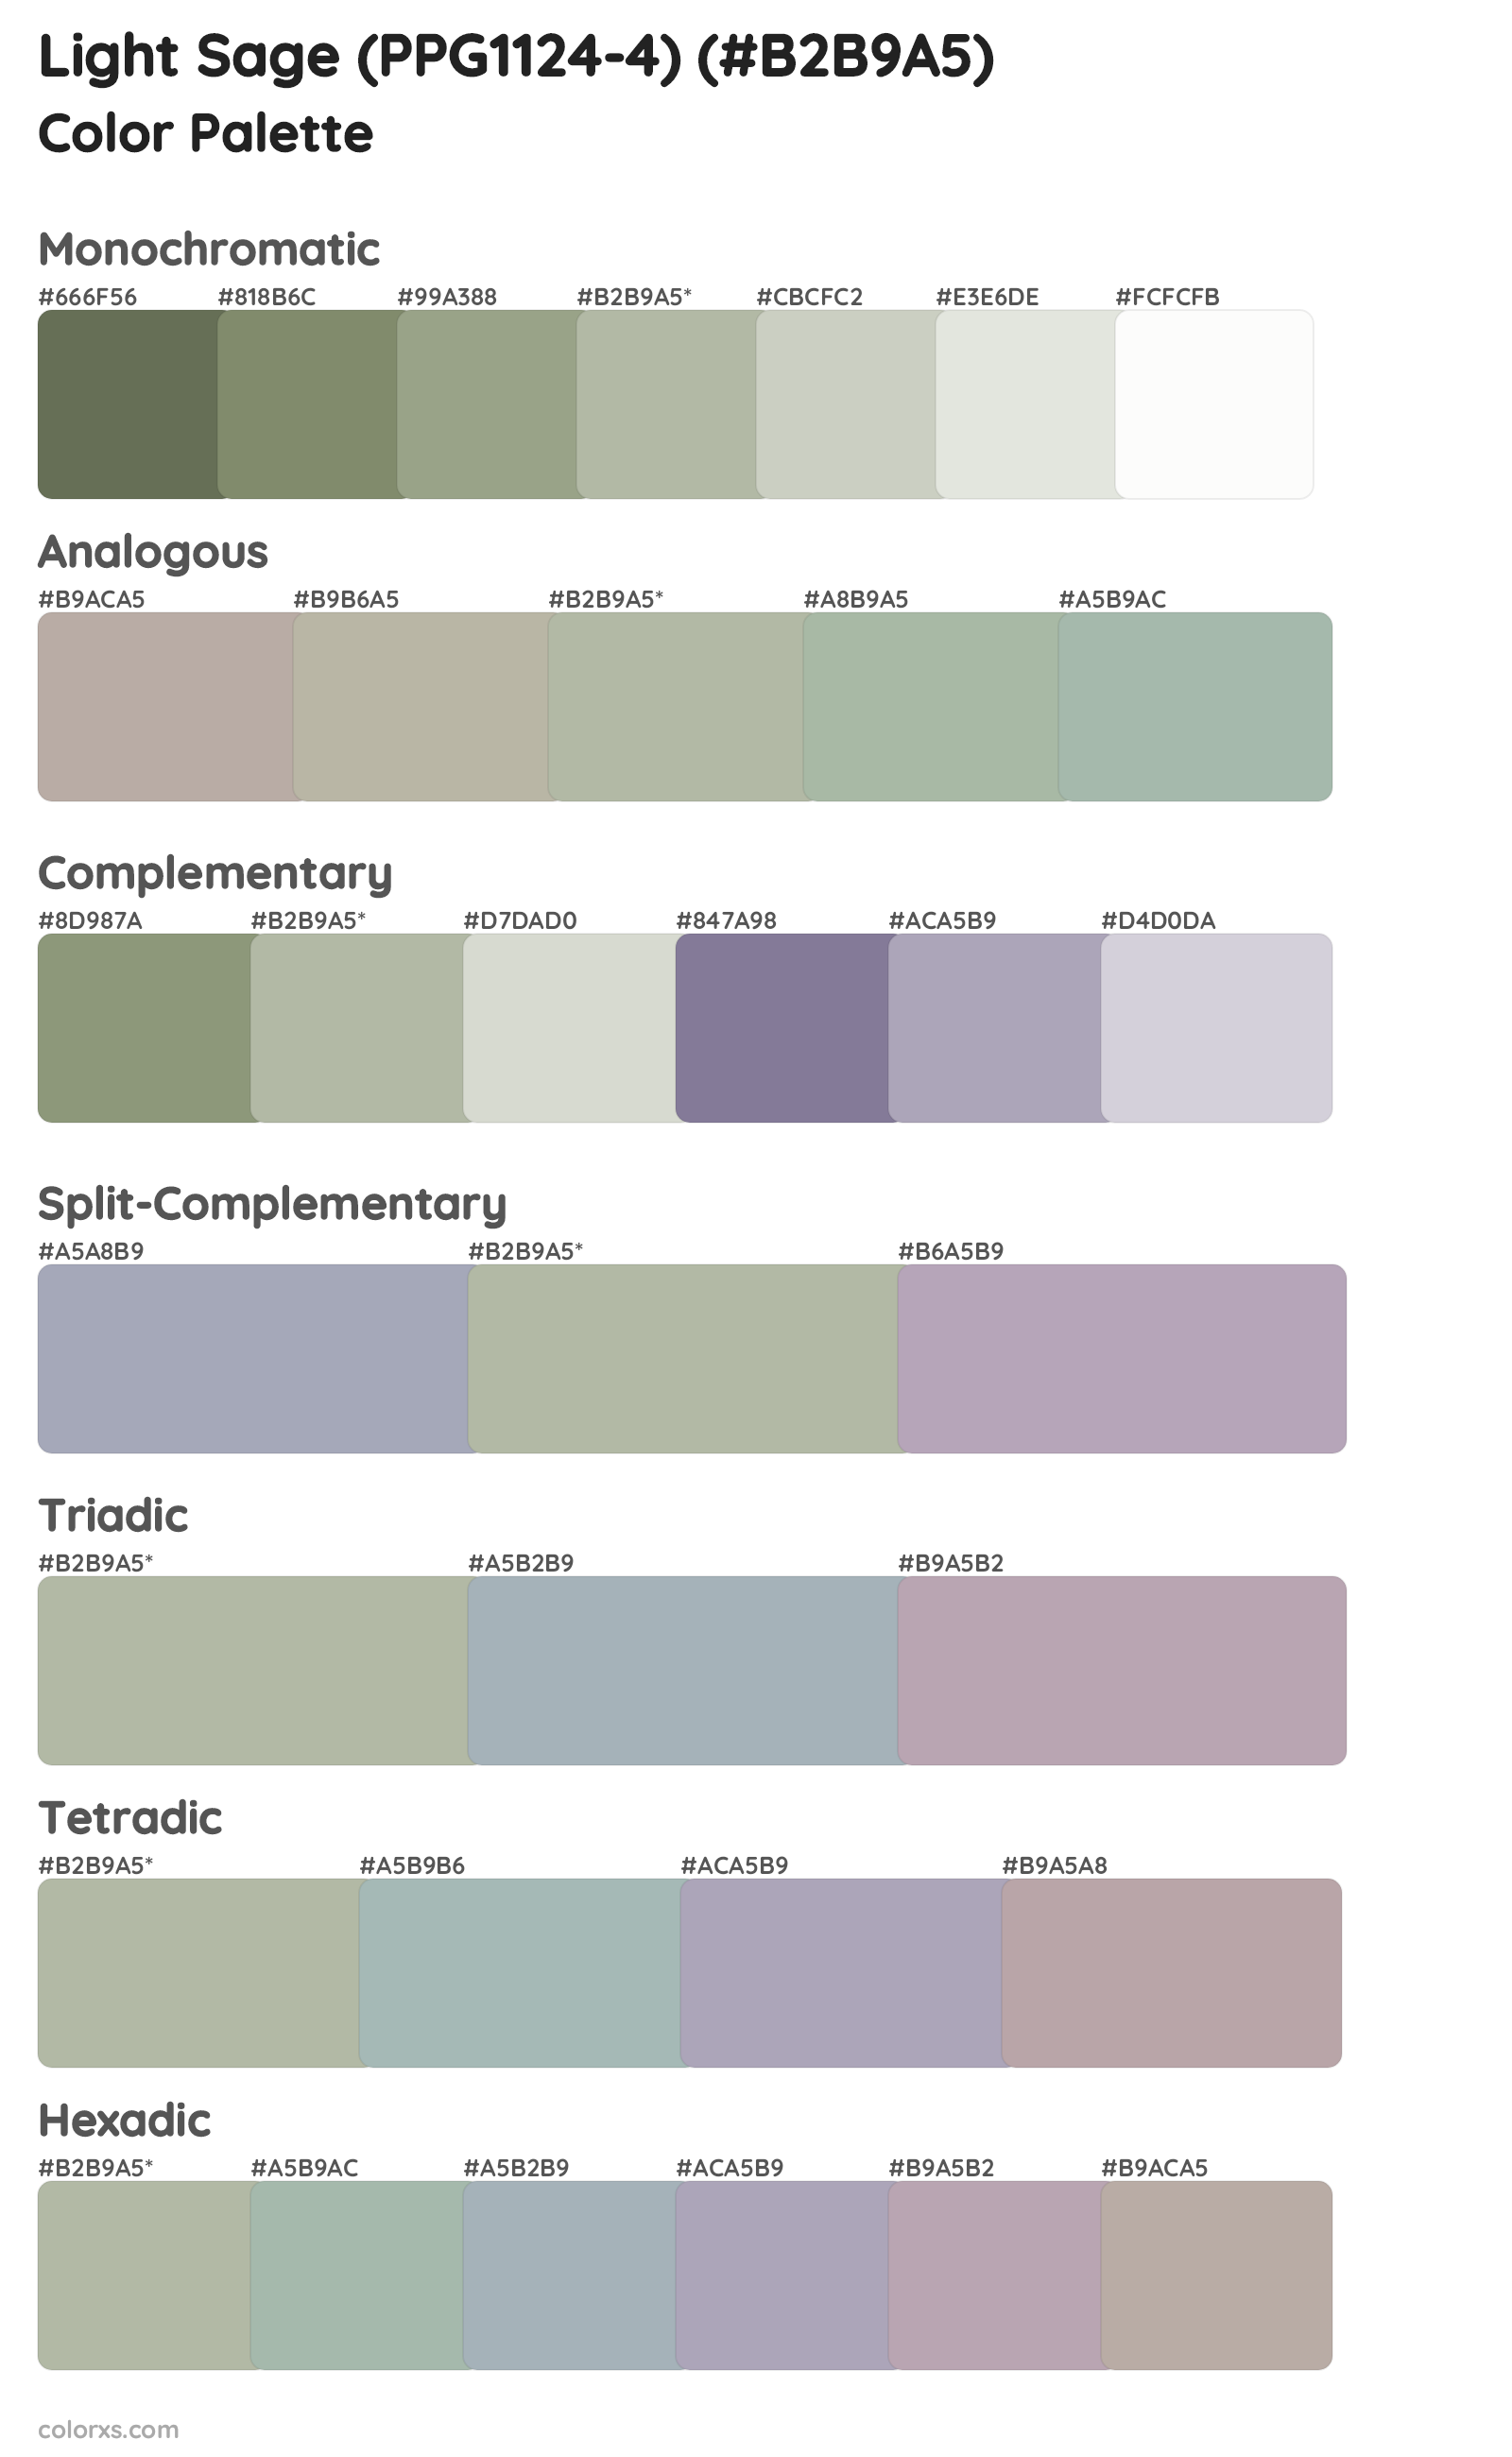 Light Sage (PPG1124-4) Color Scheme Palettes